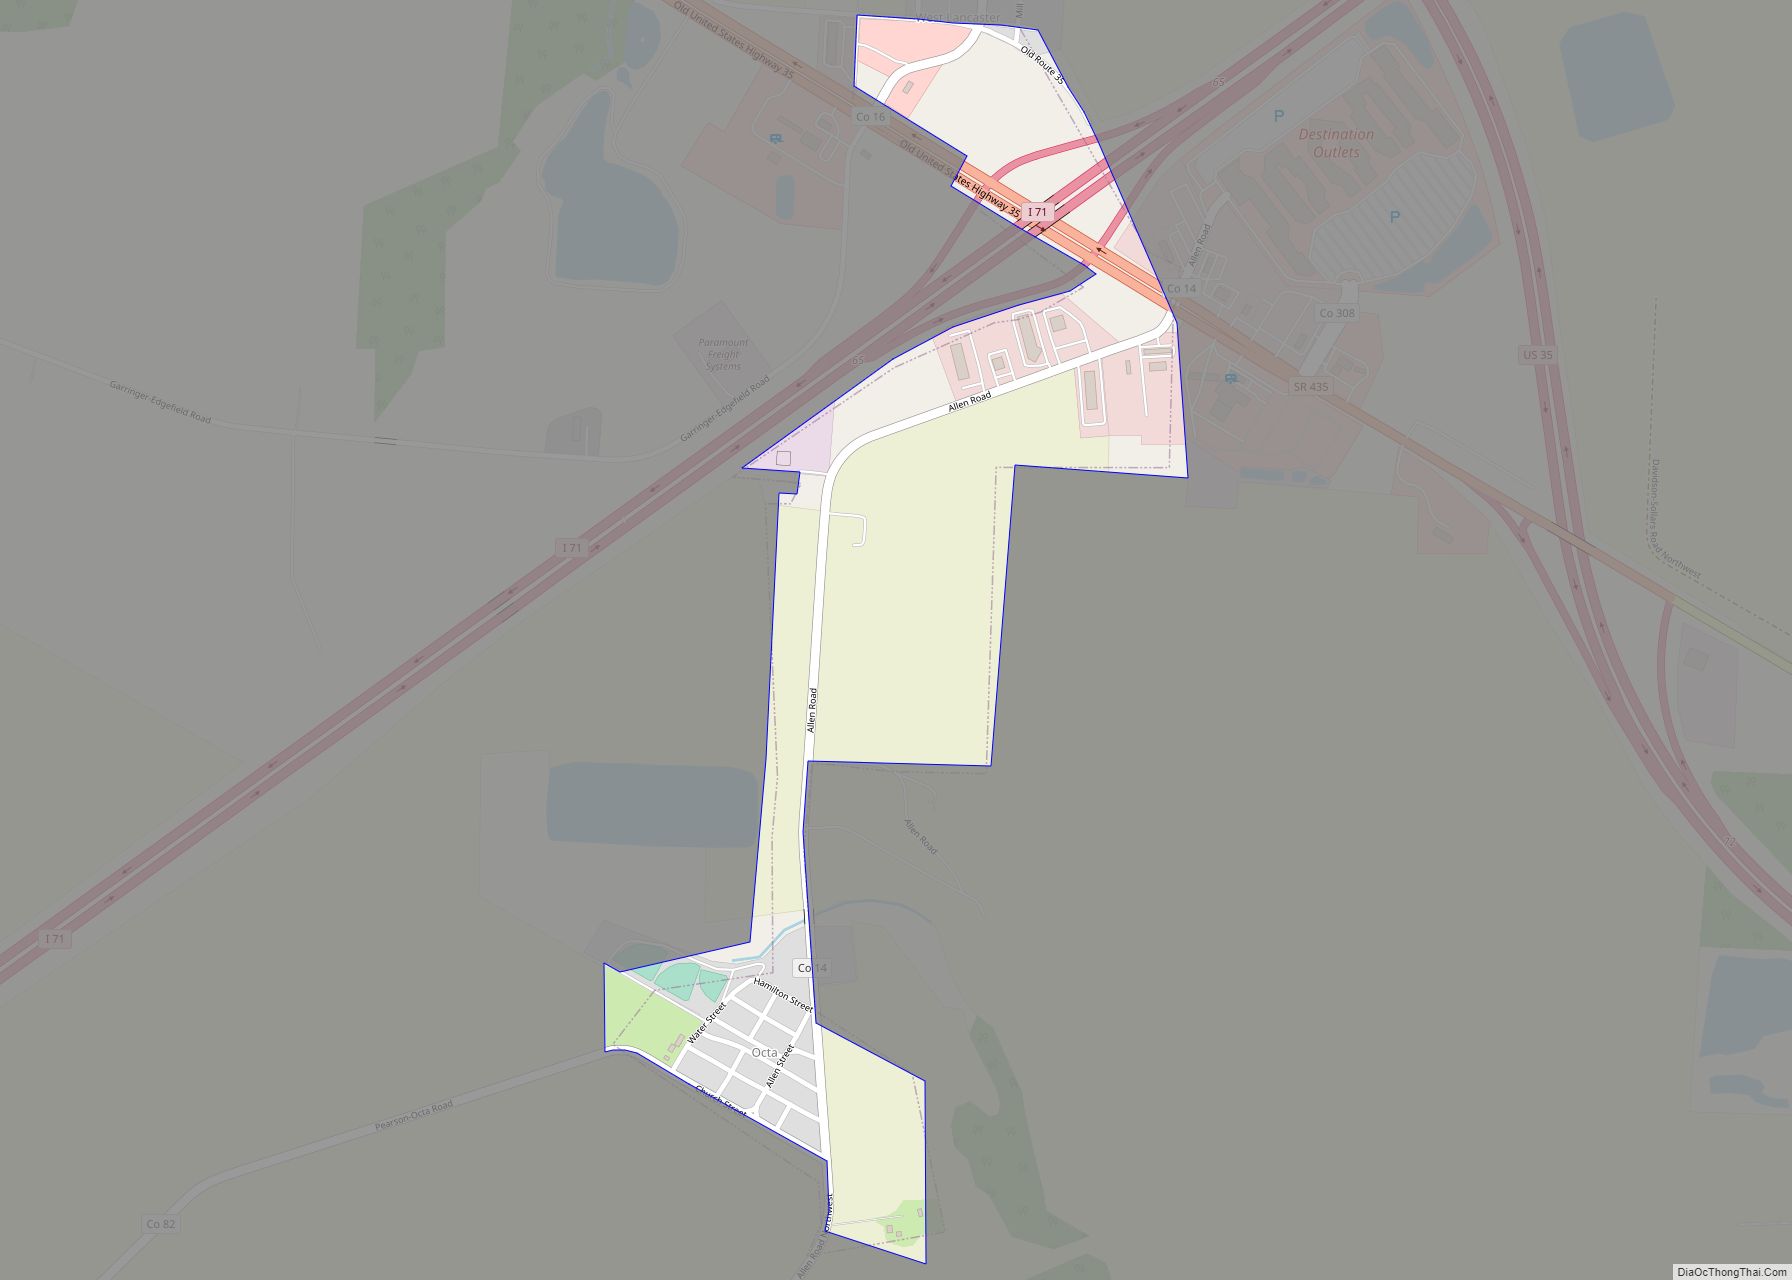 Map of Octa village